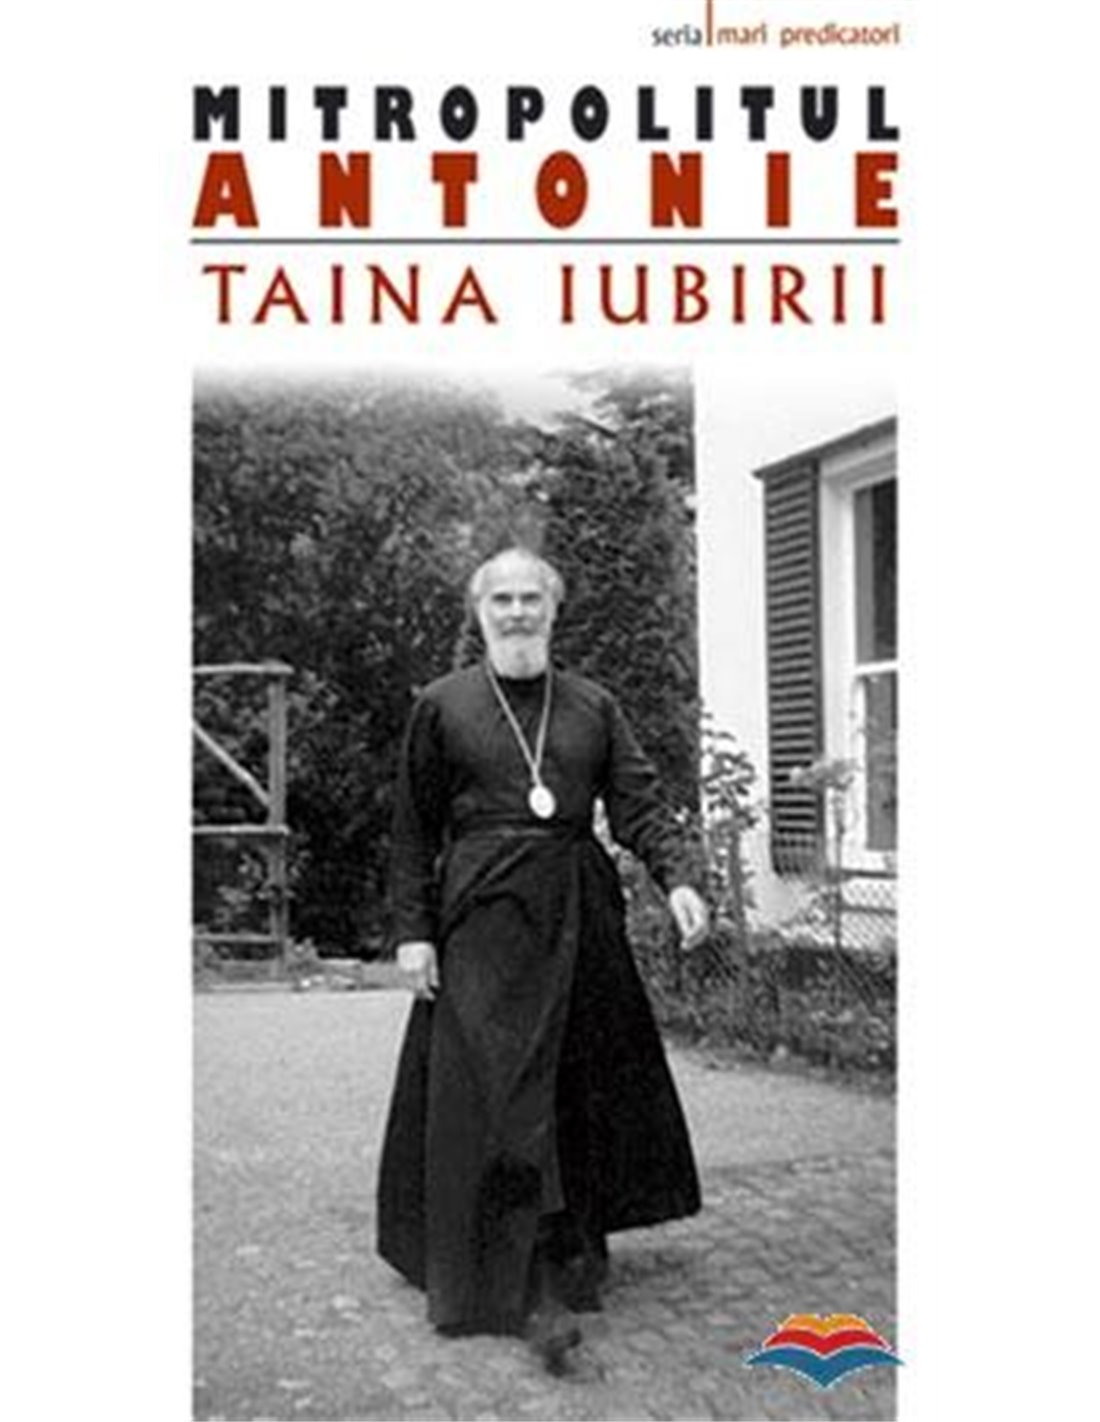 Taina iubirii - Mitrop. Antonie de Suroj | Editura Sophia